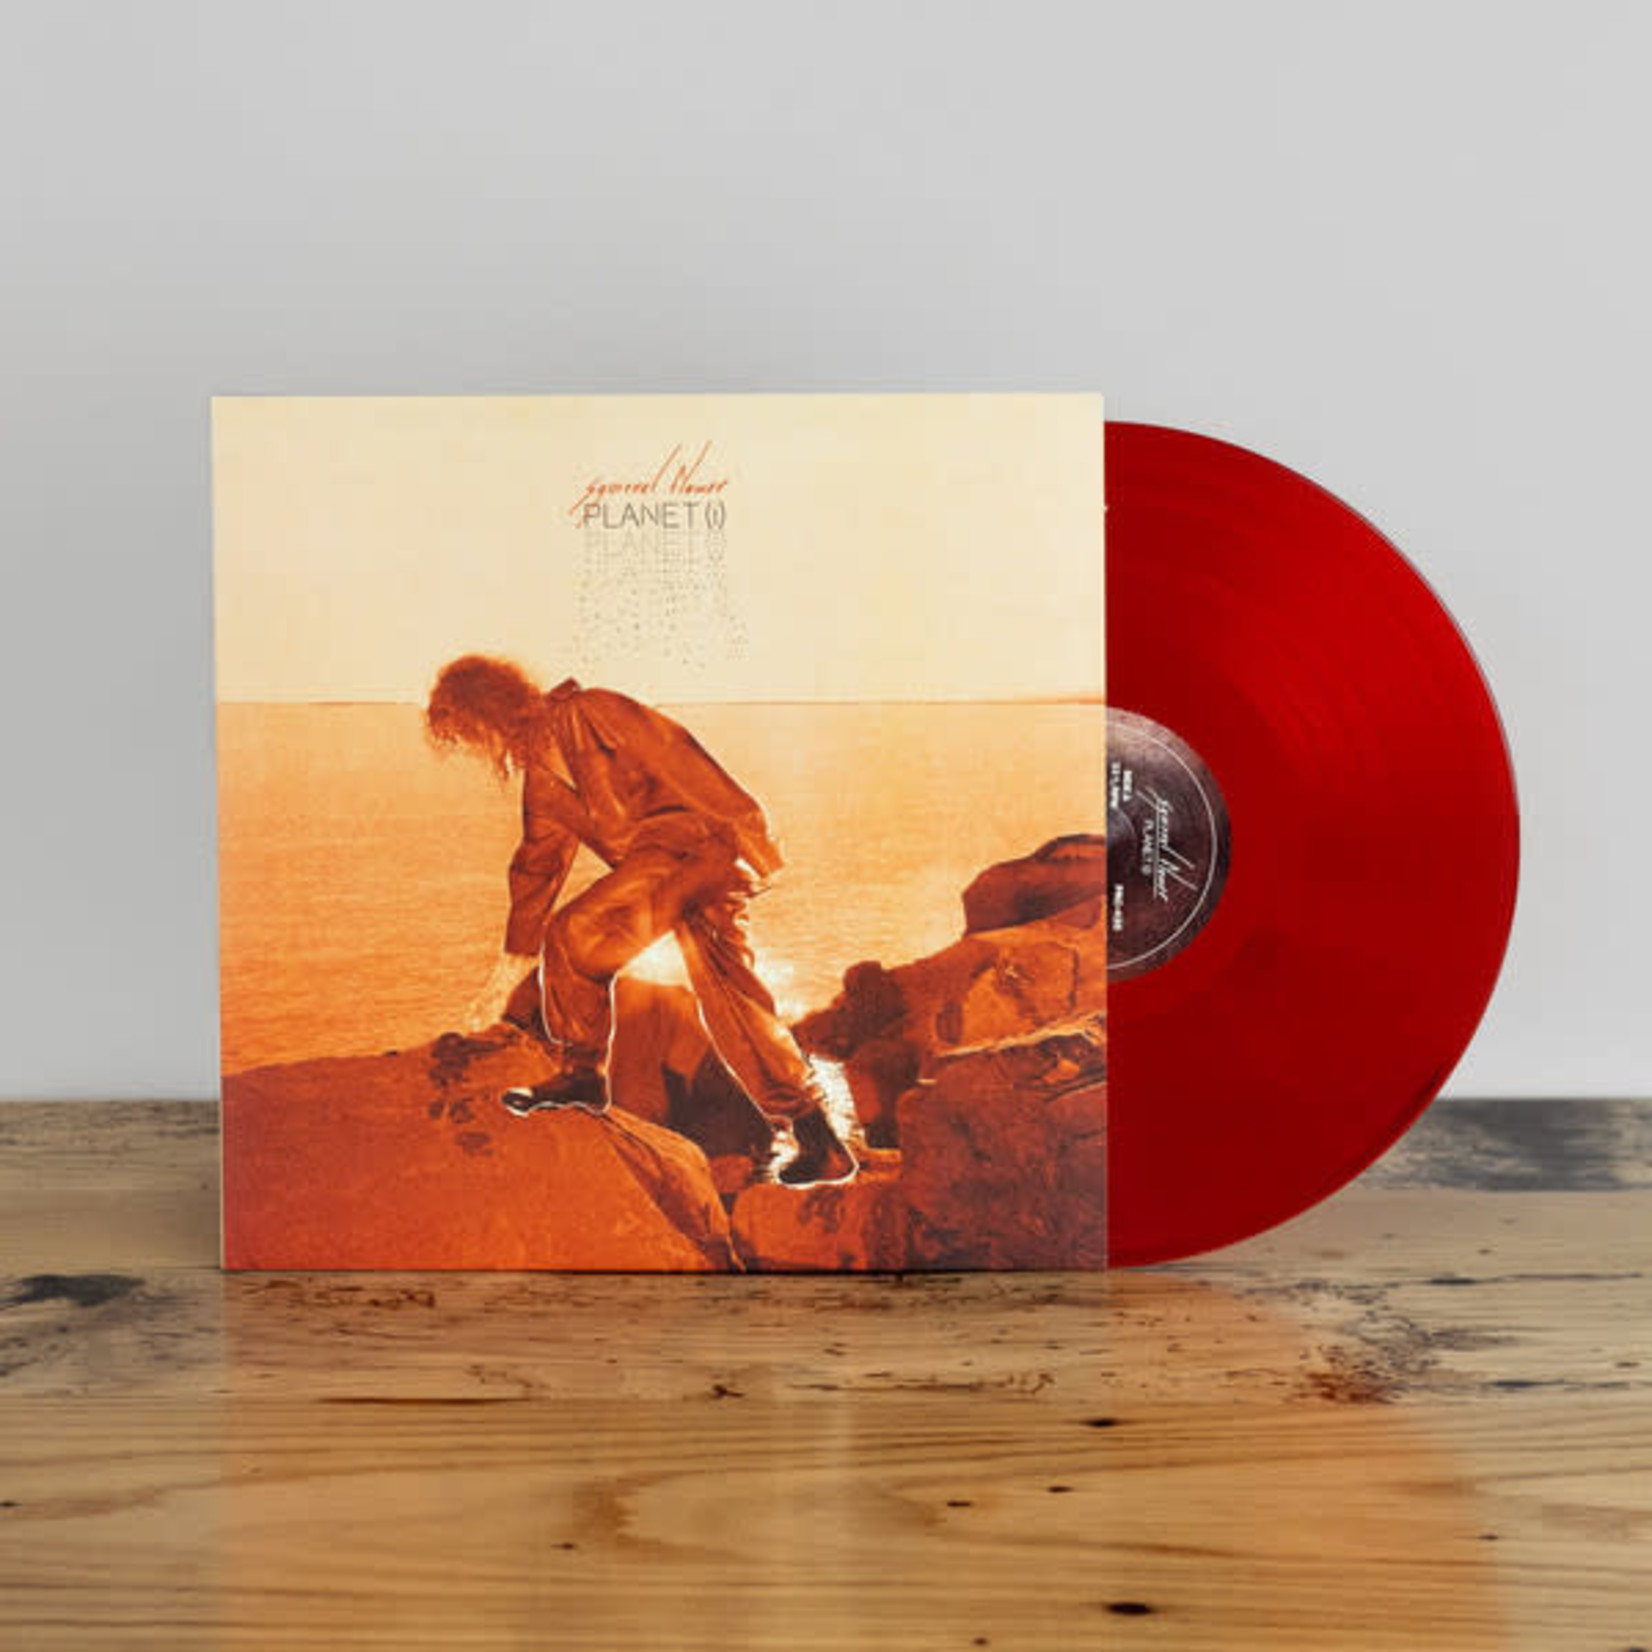 Polyvinyl Squirrel Flower - Planet (i) (LP) [Blood Orange]